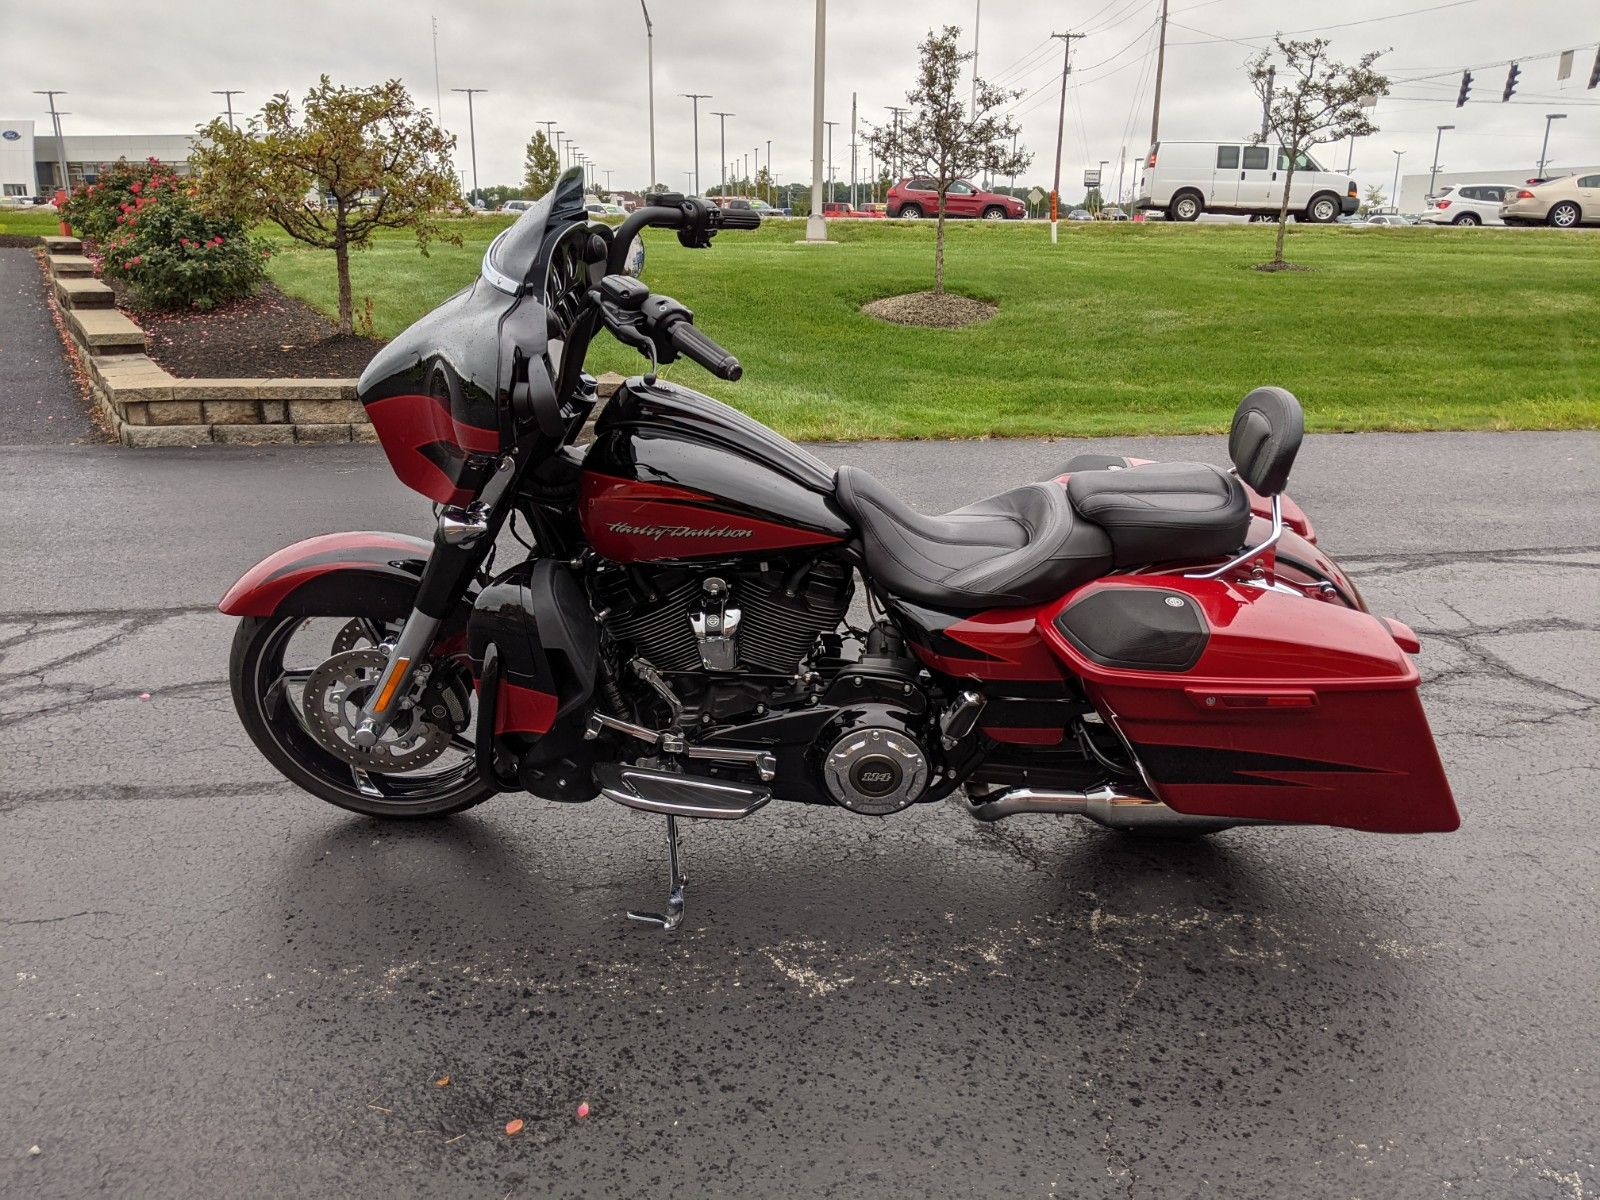 Used 2017 Harley Davidson Cvo Street Glide Starfire Black Atomic Red Motorcycles In Muncie In U998